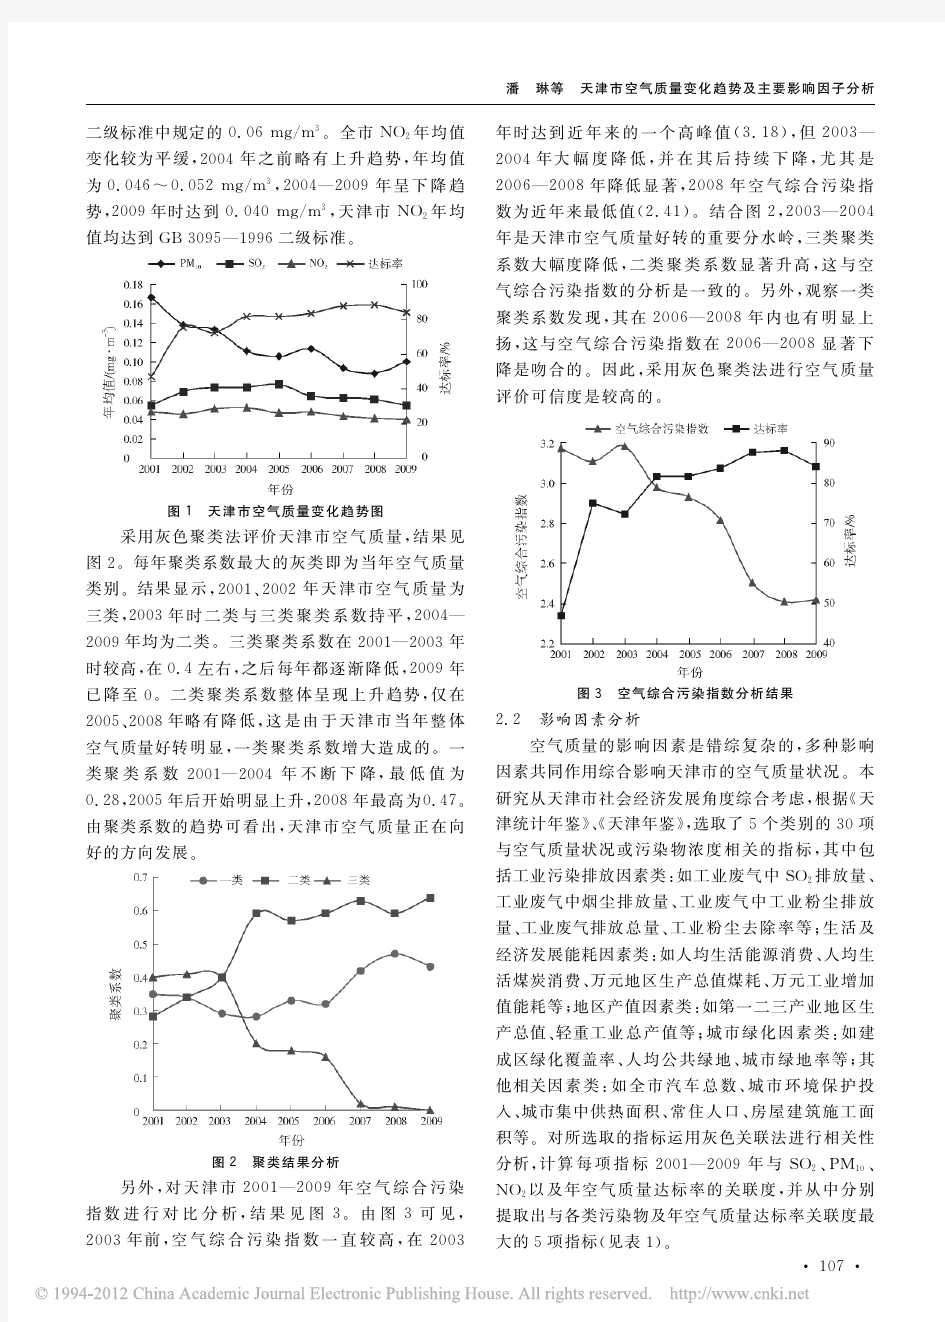 天津市空气质量变化趋势及主要影响因子分析_潘琳